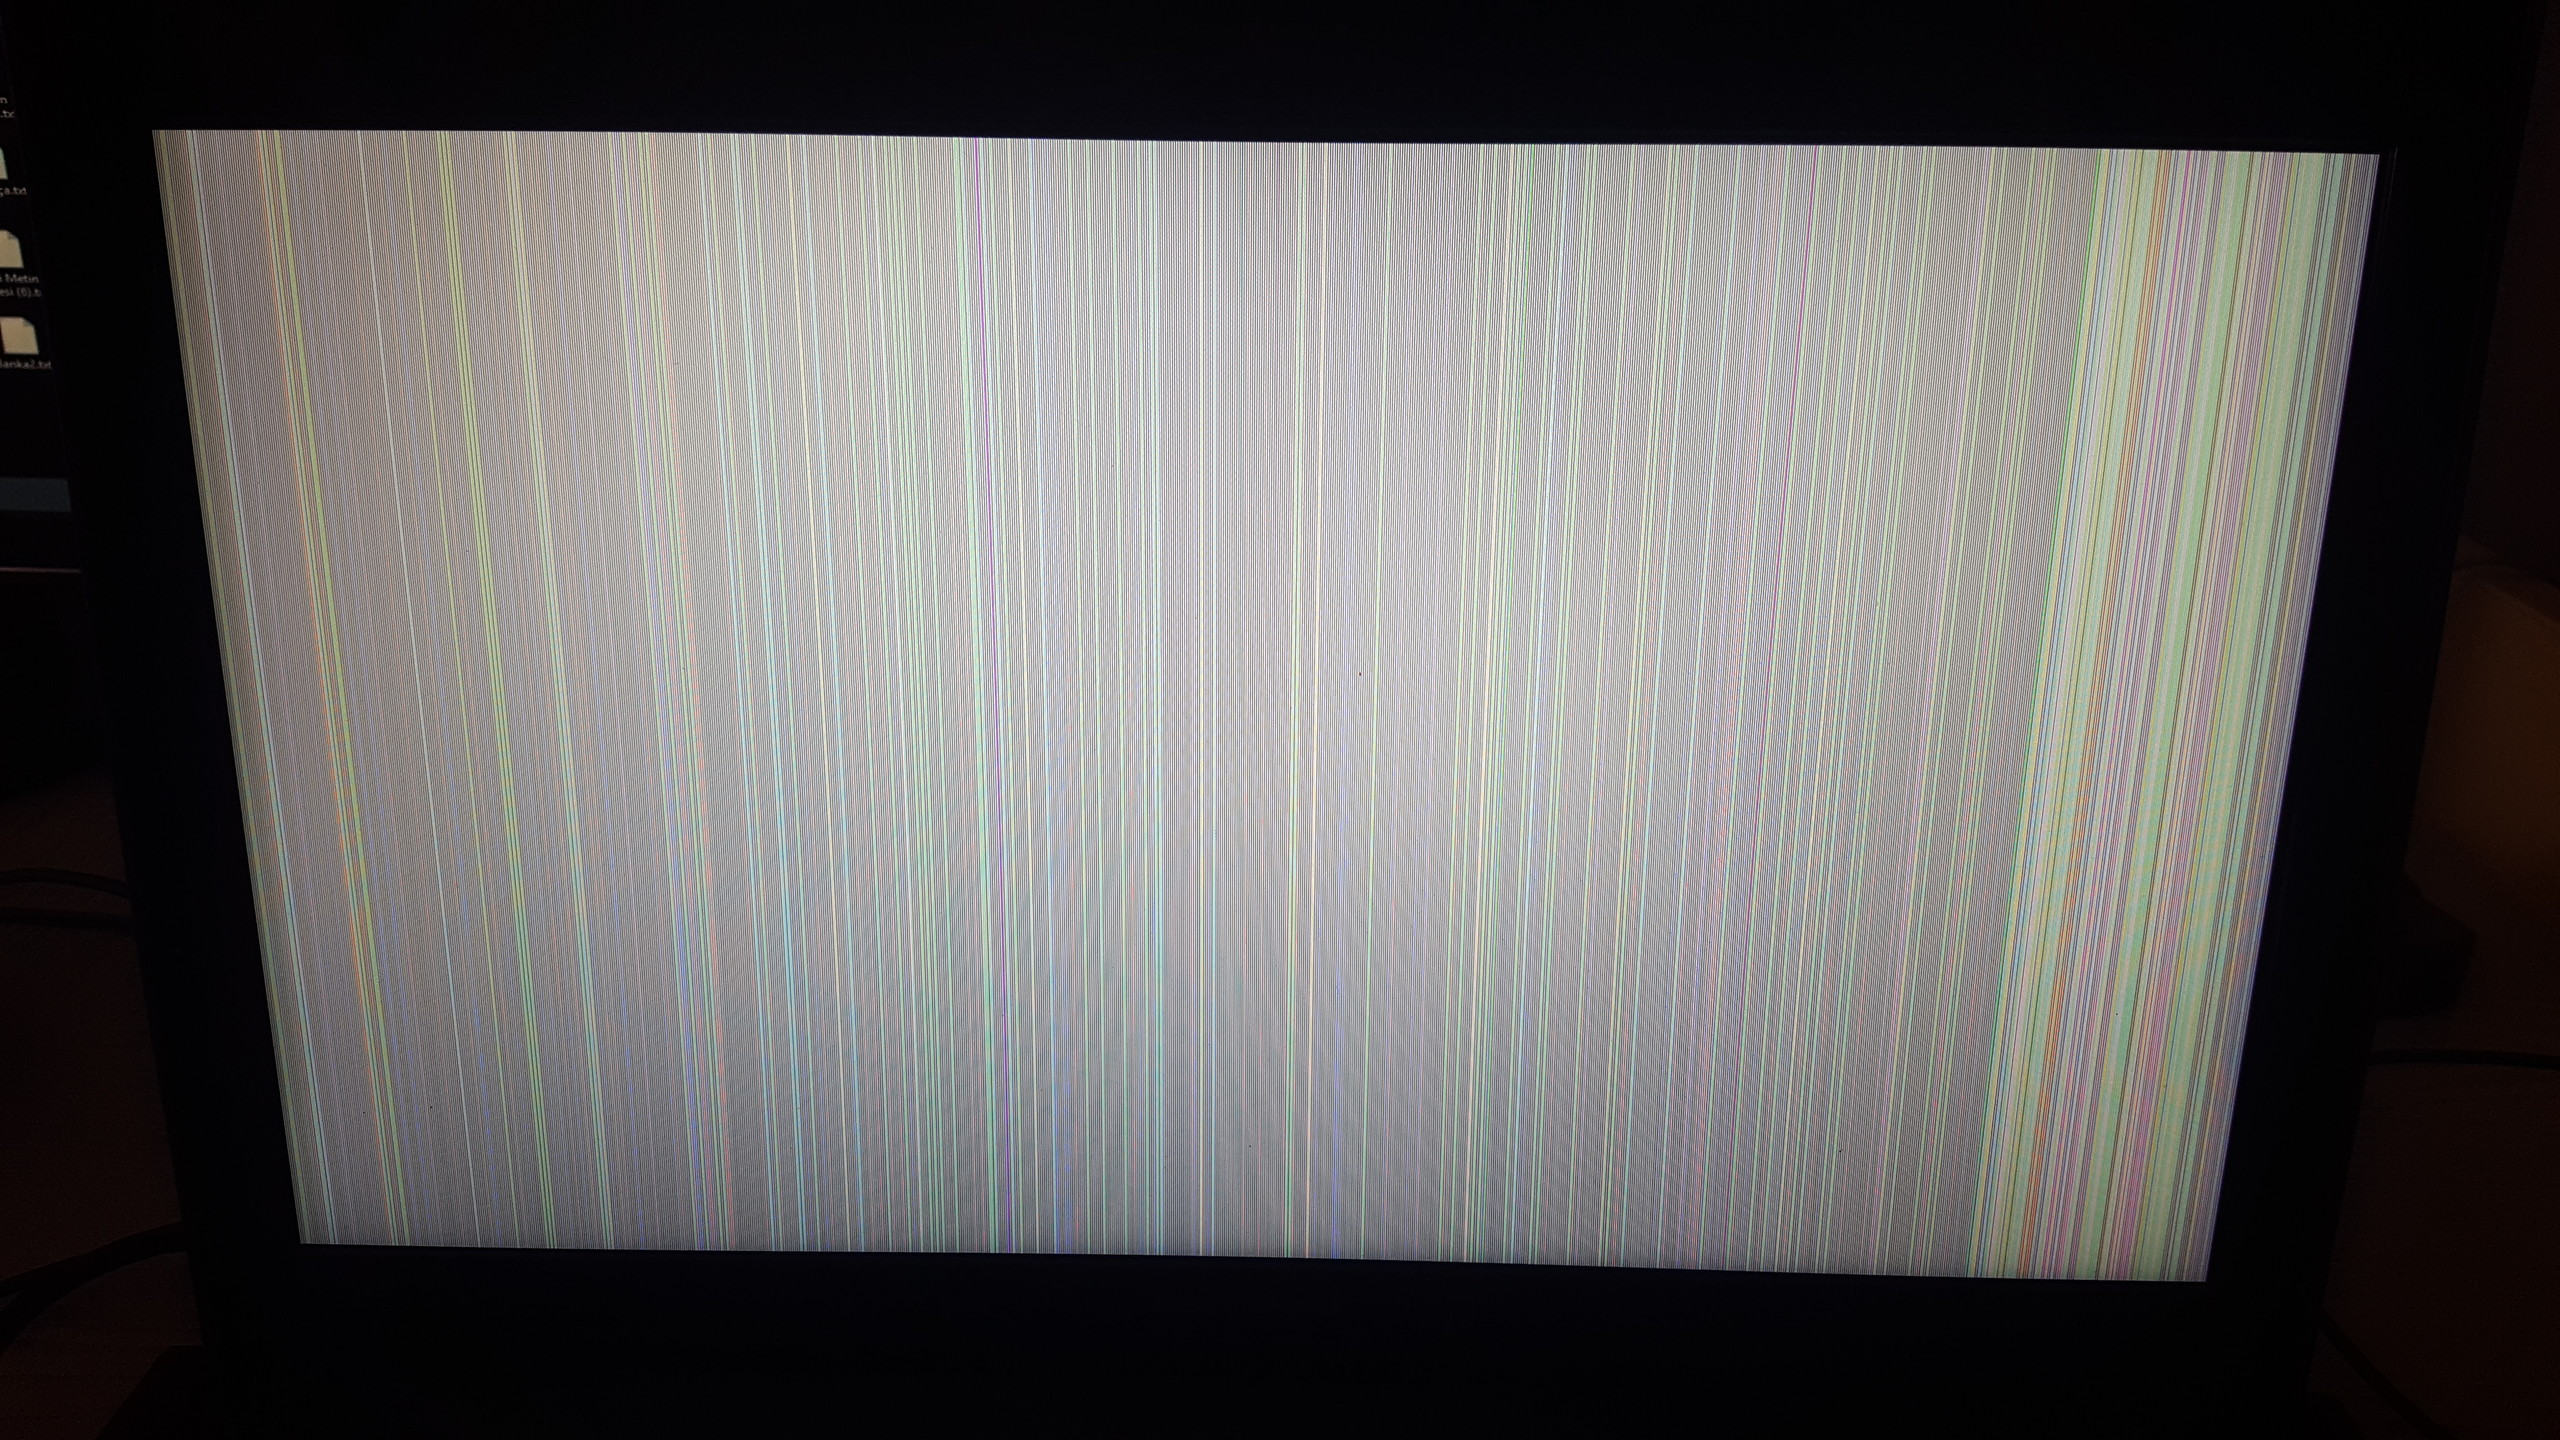  Dizüstü bilgisayarın ekranında yatay çizgiler çıktı.